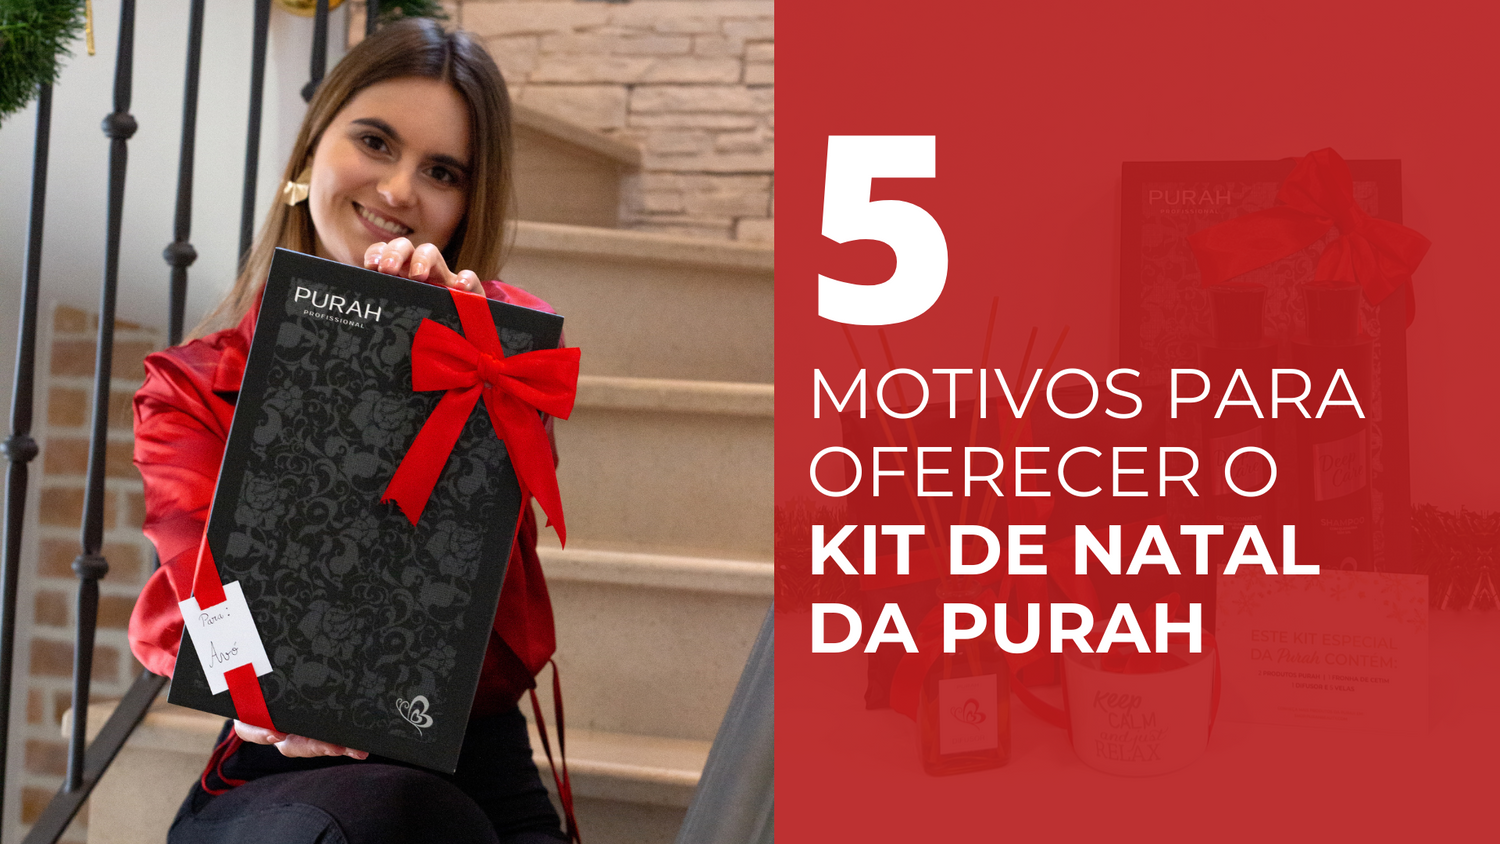 5 motivos para oferecer o Kit de Natal da PURAH - Loja Purah beauty